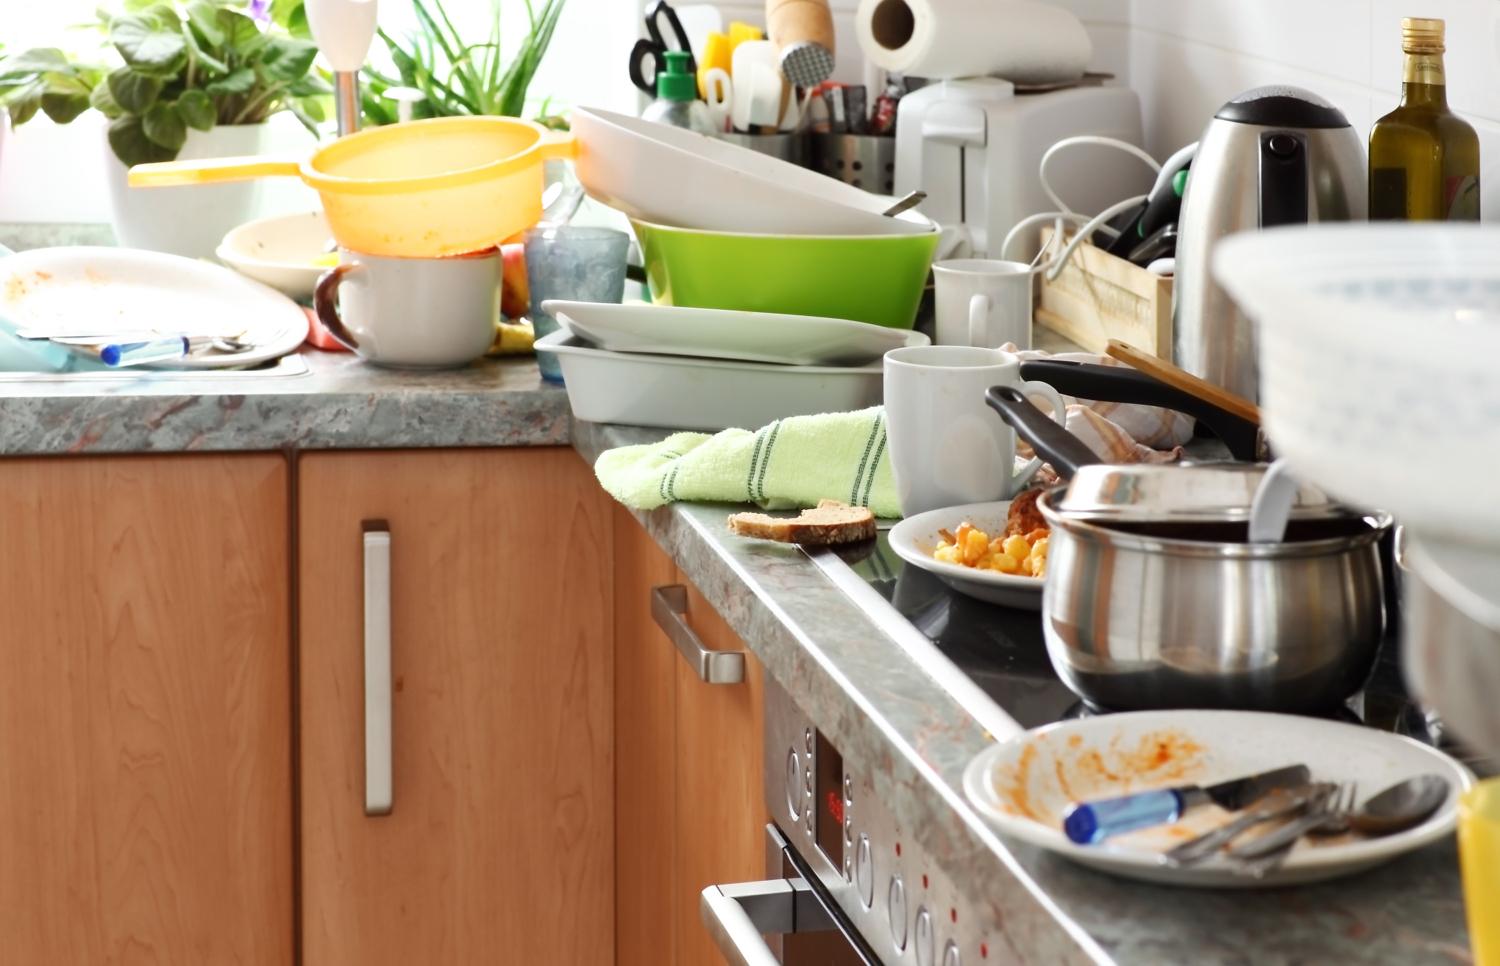 Đừng quên dọn dẹp căn bếp thường xuyên nếu không muốn mùi hôi ảnh hưởng tới không gian gia đình